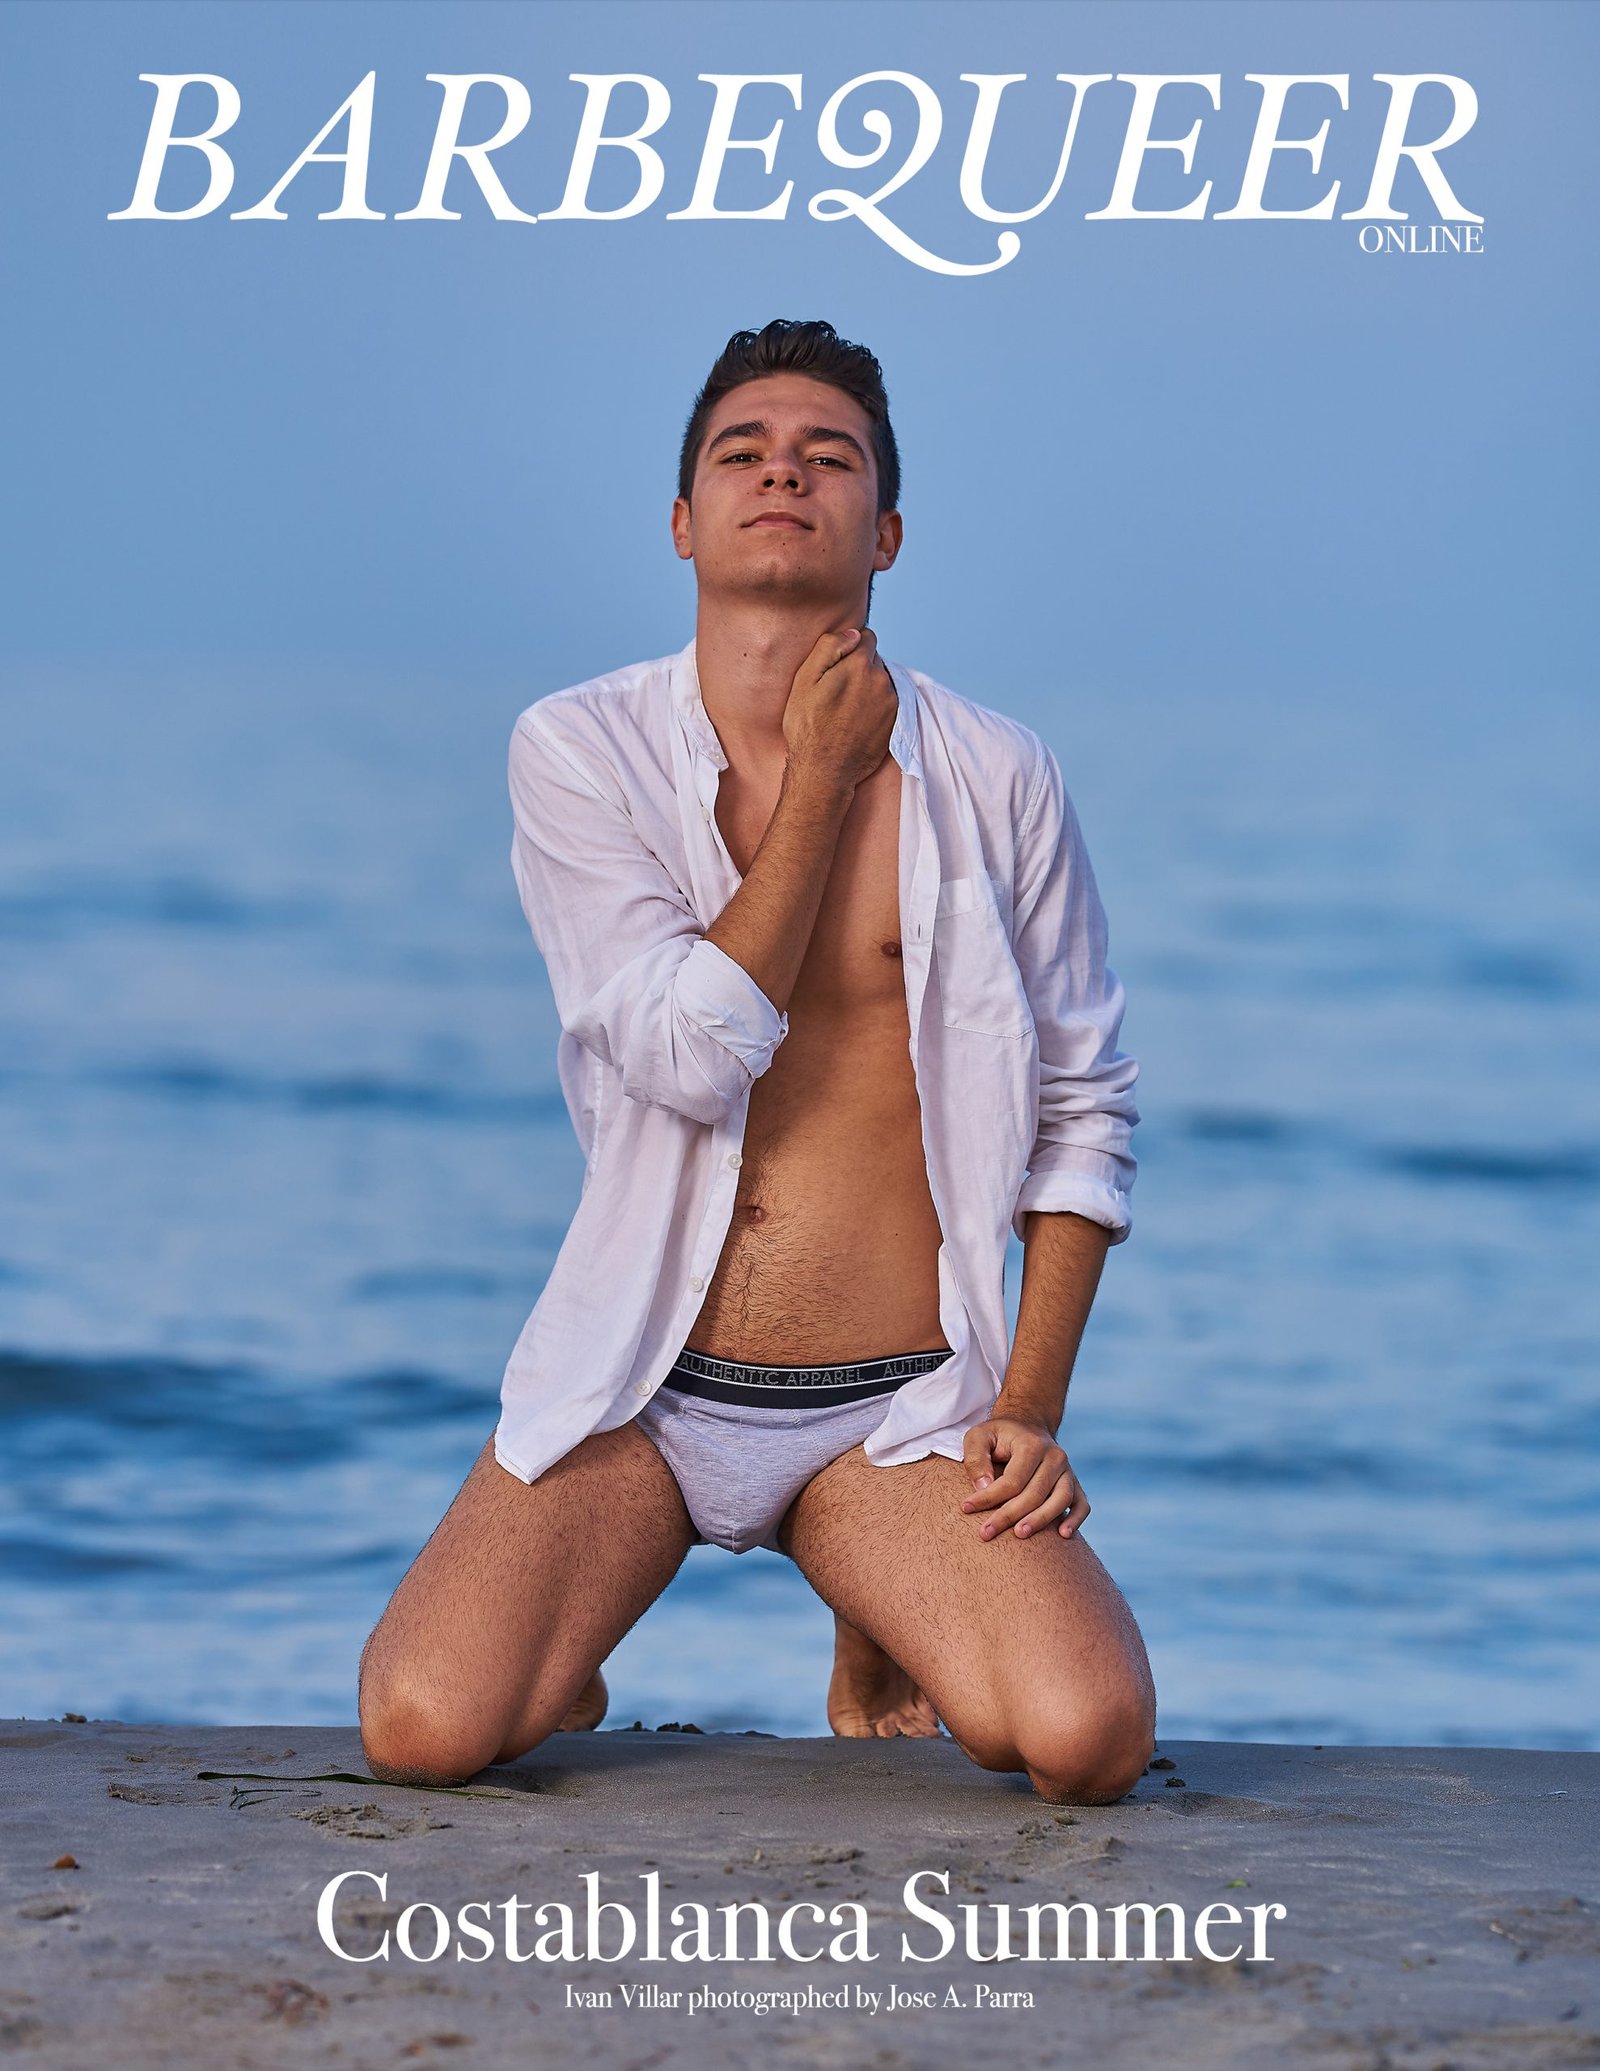 Barbequeer publica editorial desnudo gay de diseñoyfoto.com